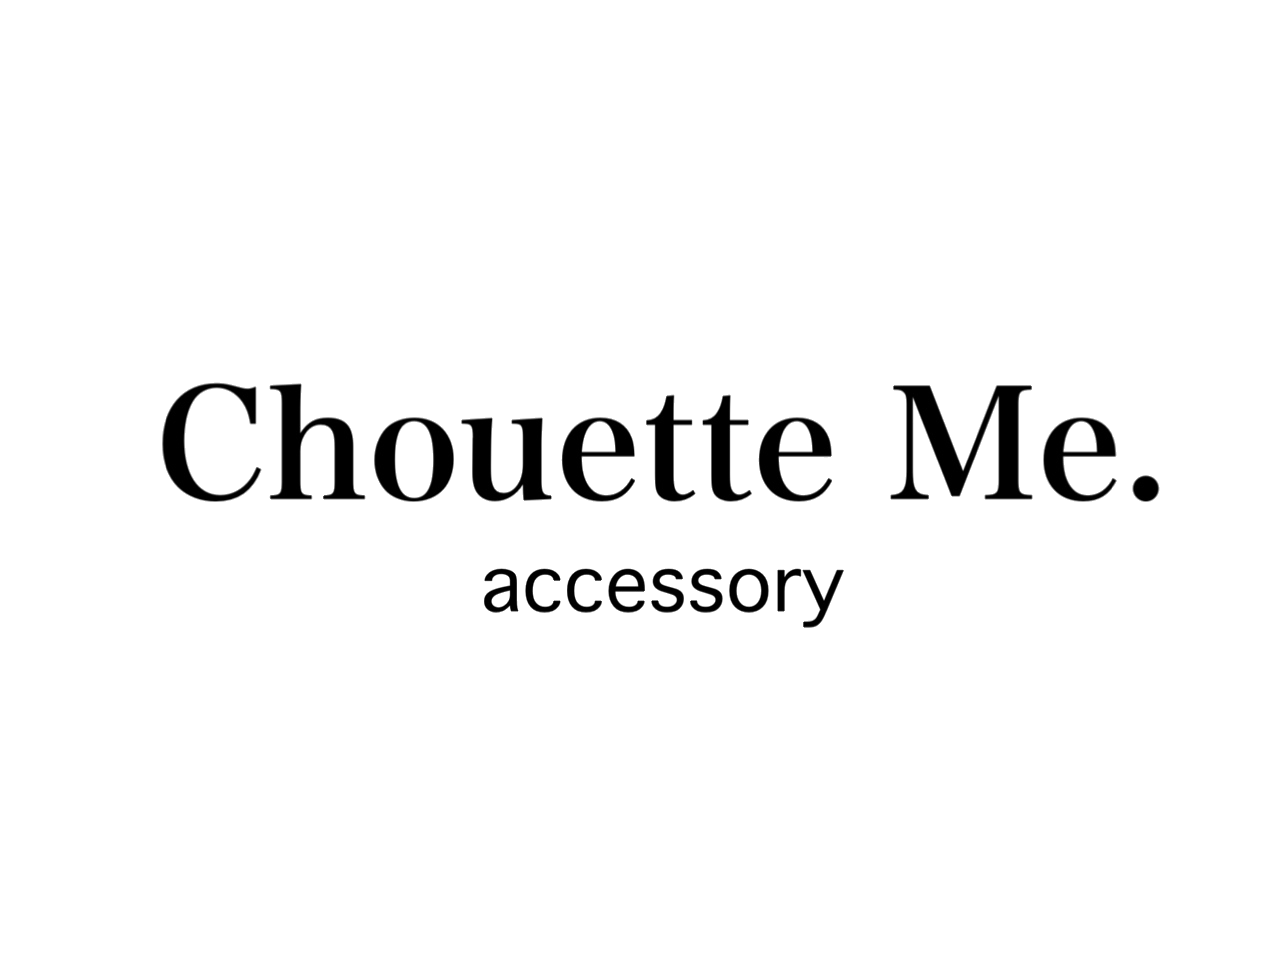 Chouette Me. accessory